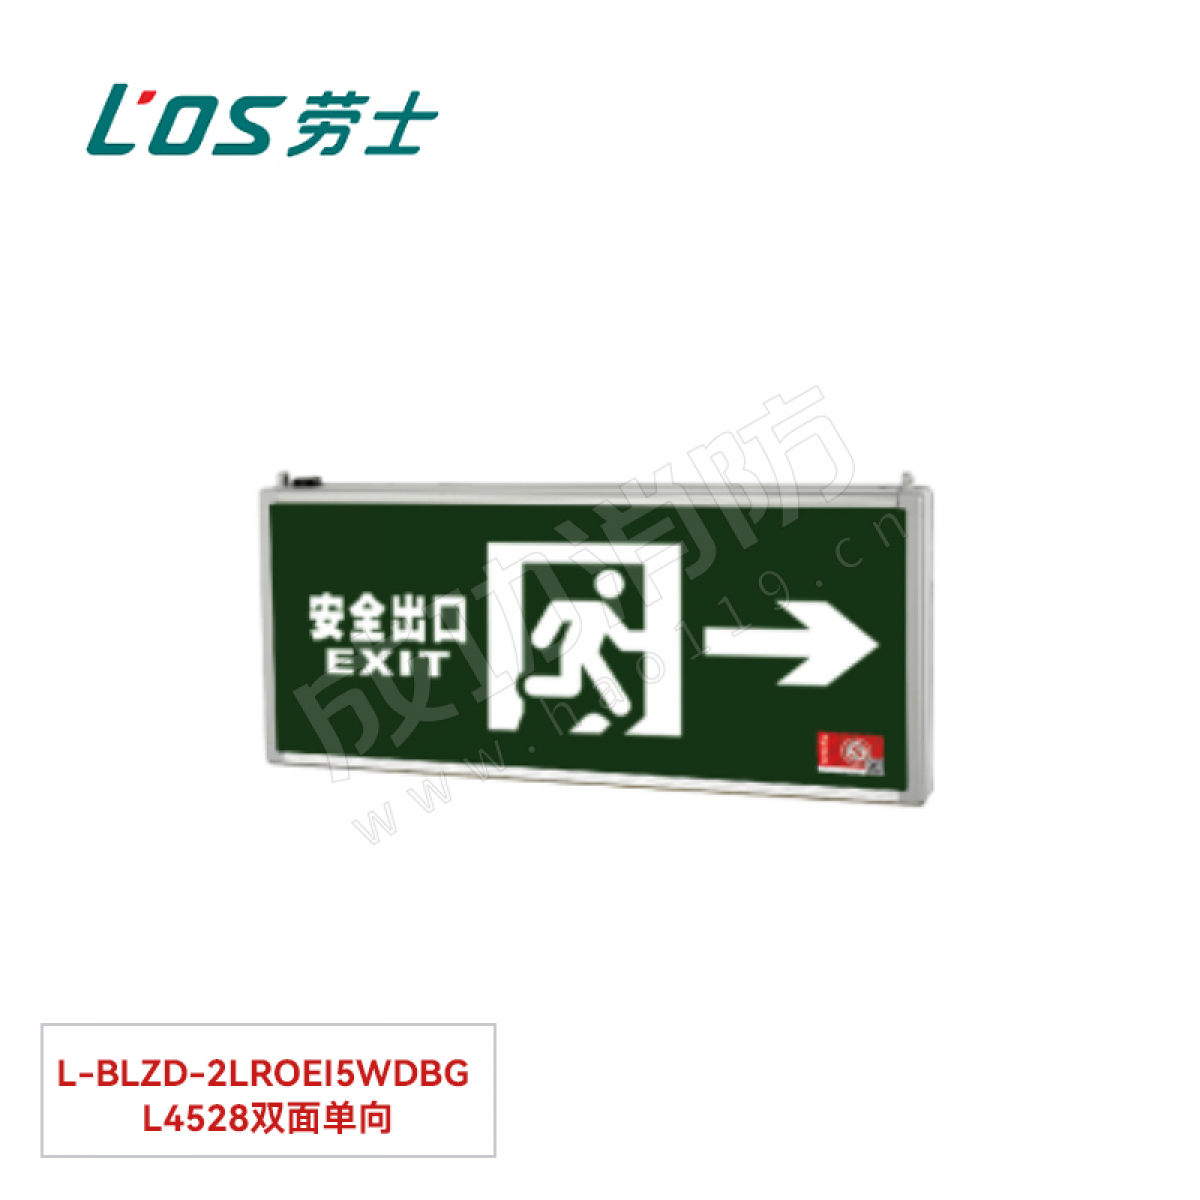 劳士 消防应急标志灯(吊装) L-BLZD-2LROEⅠ5WDBG L4528双面单向